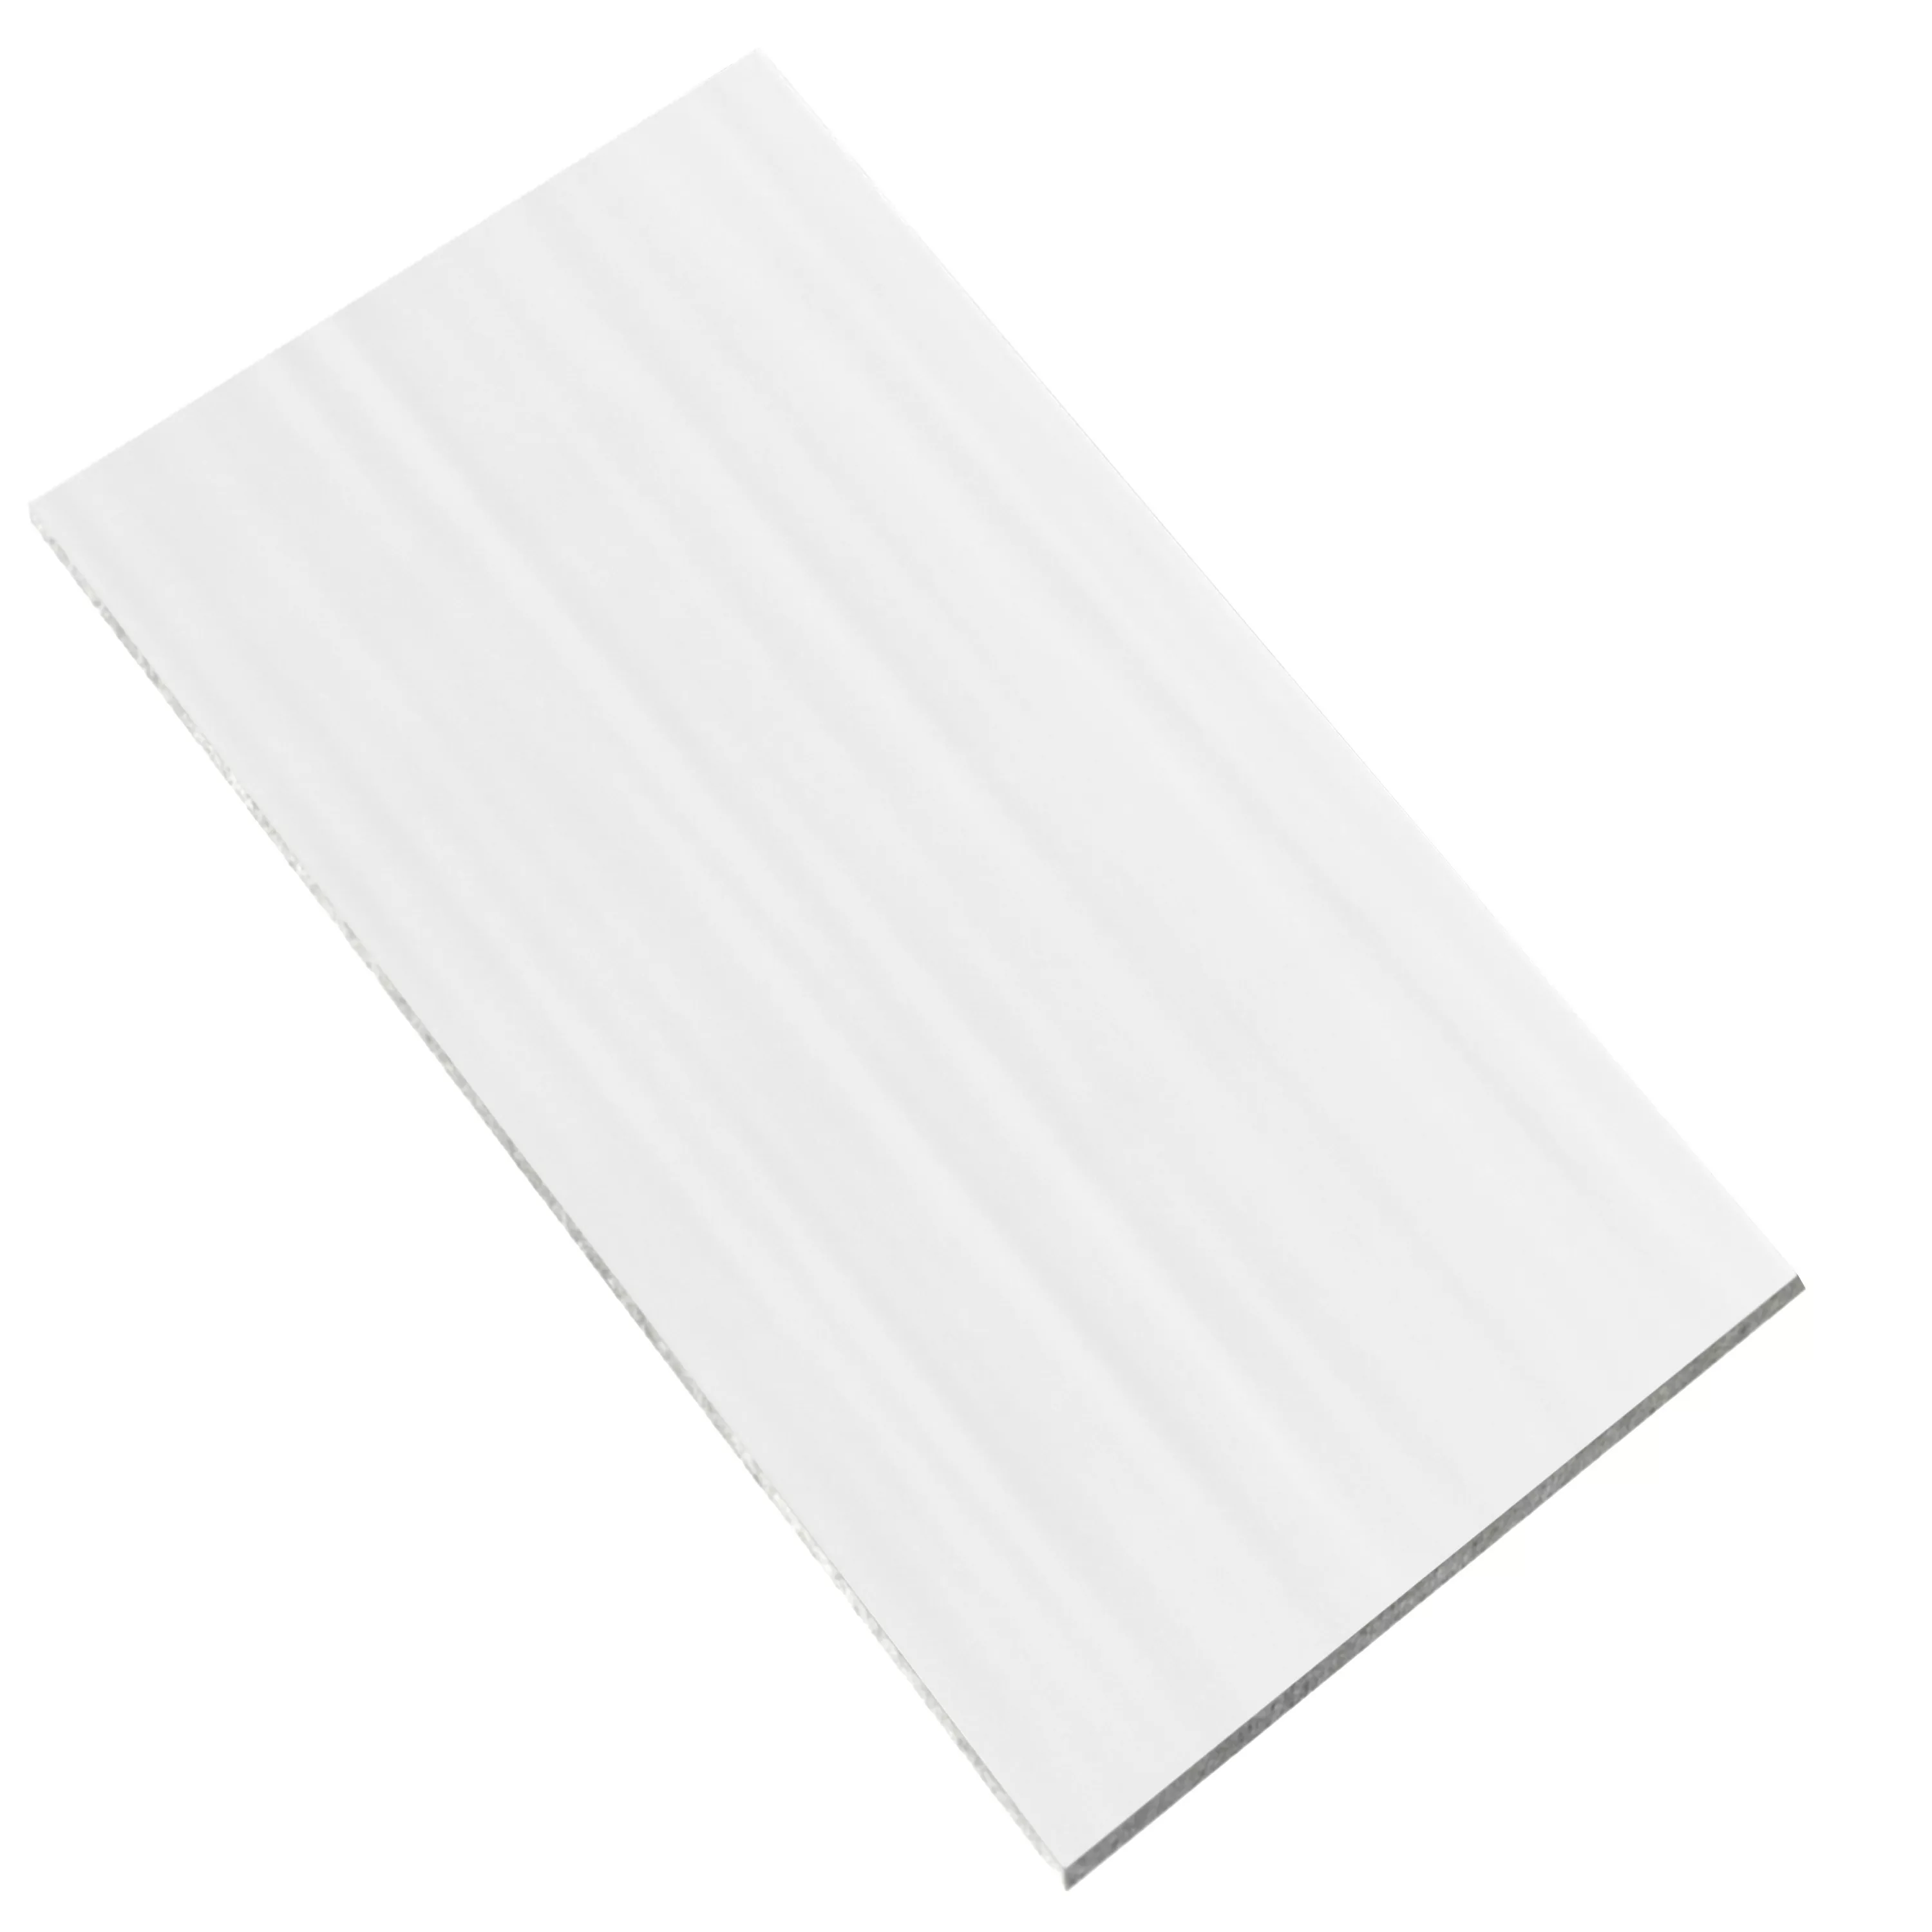 Wall Tiles Richard Wave 30x60cm White Mat